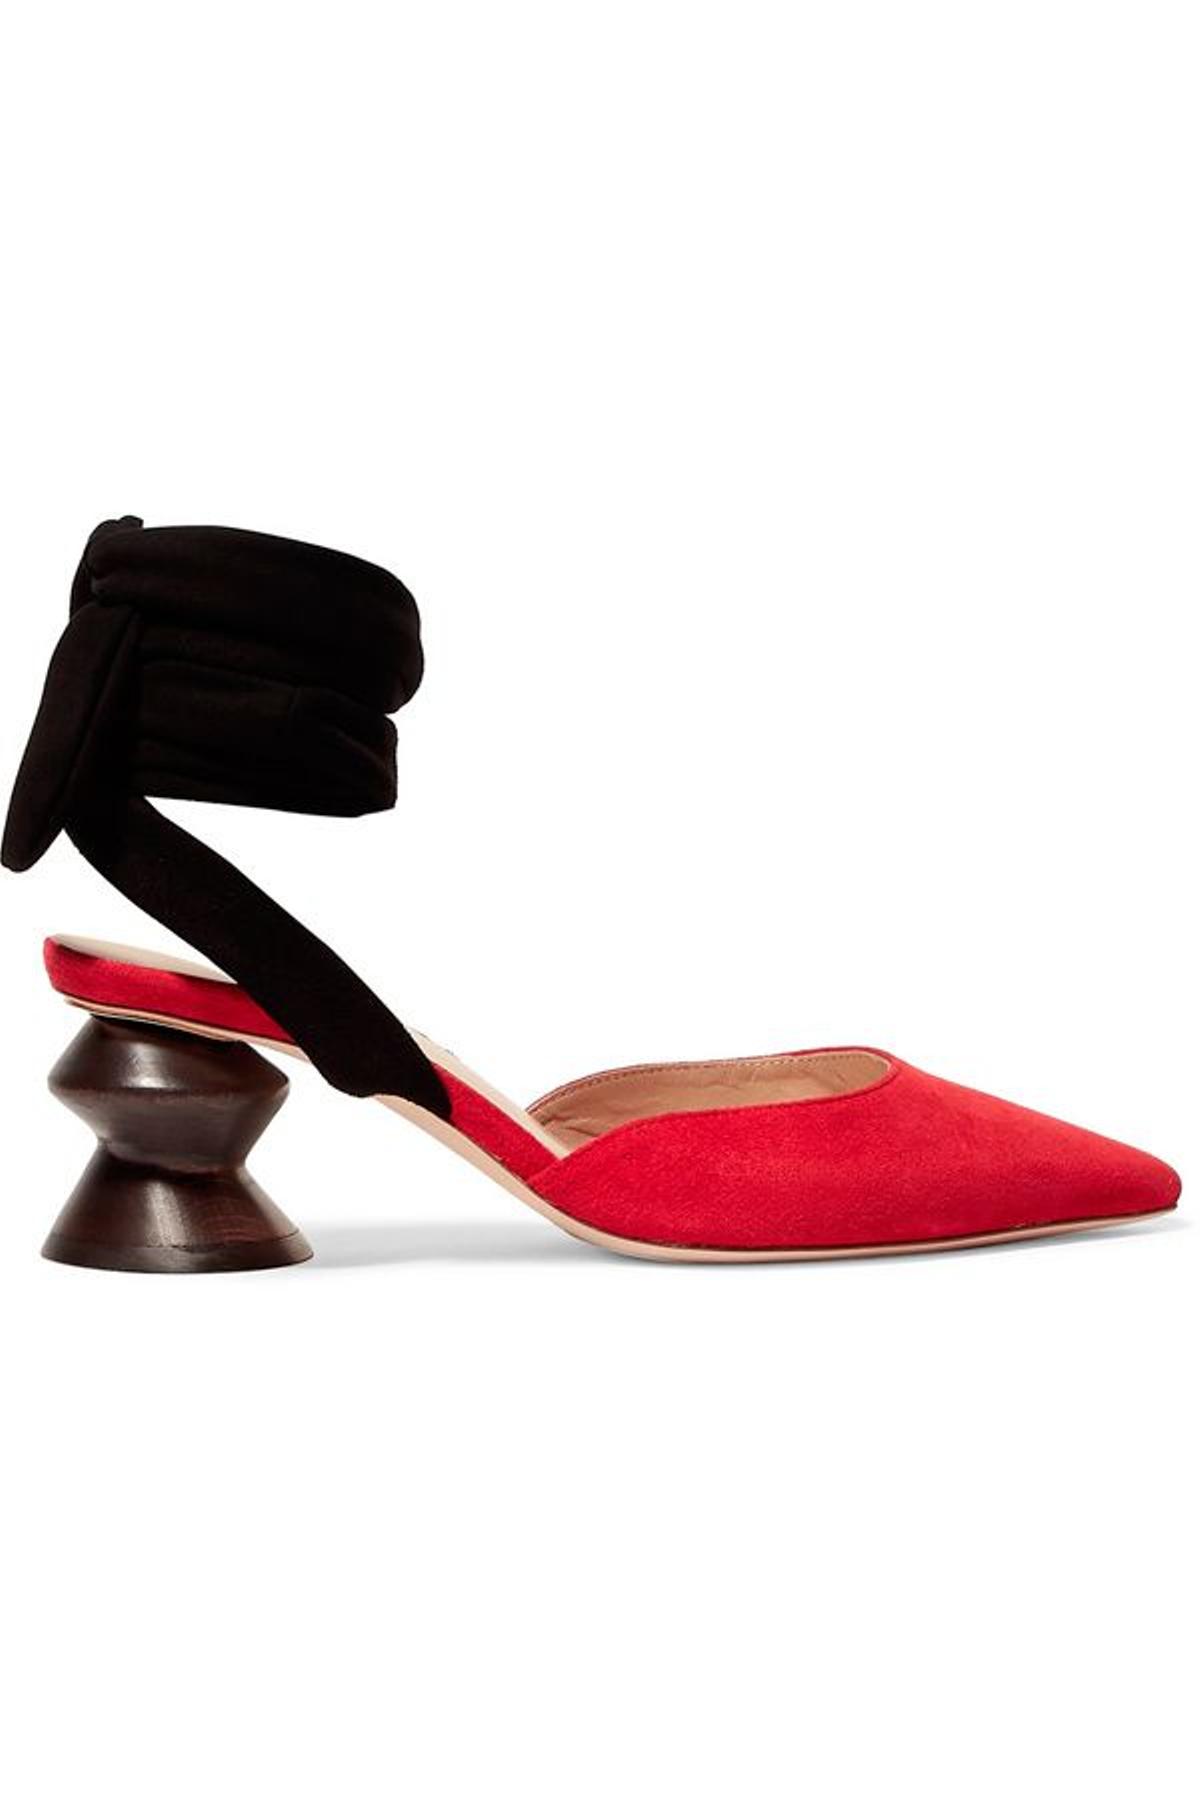 Sandalias atadas al tobillo con tacón escultural, de Rejina Pyo